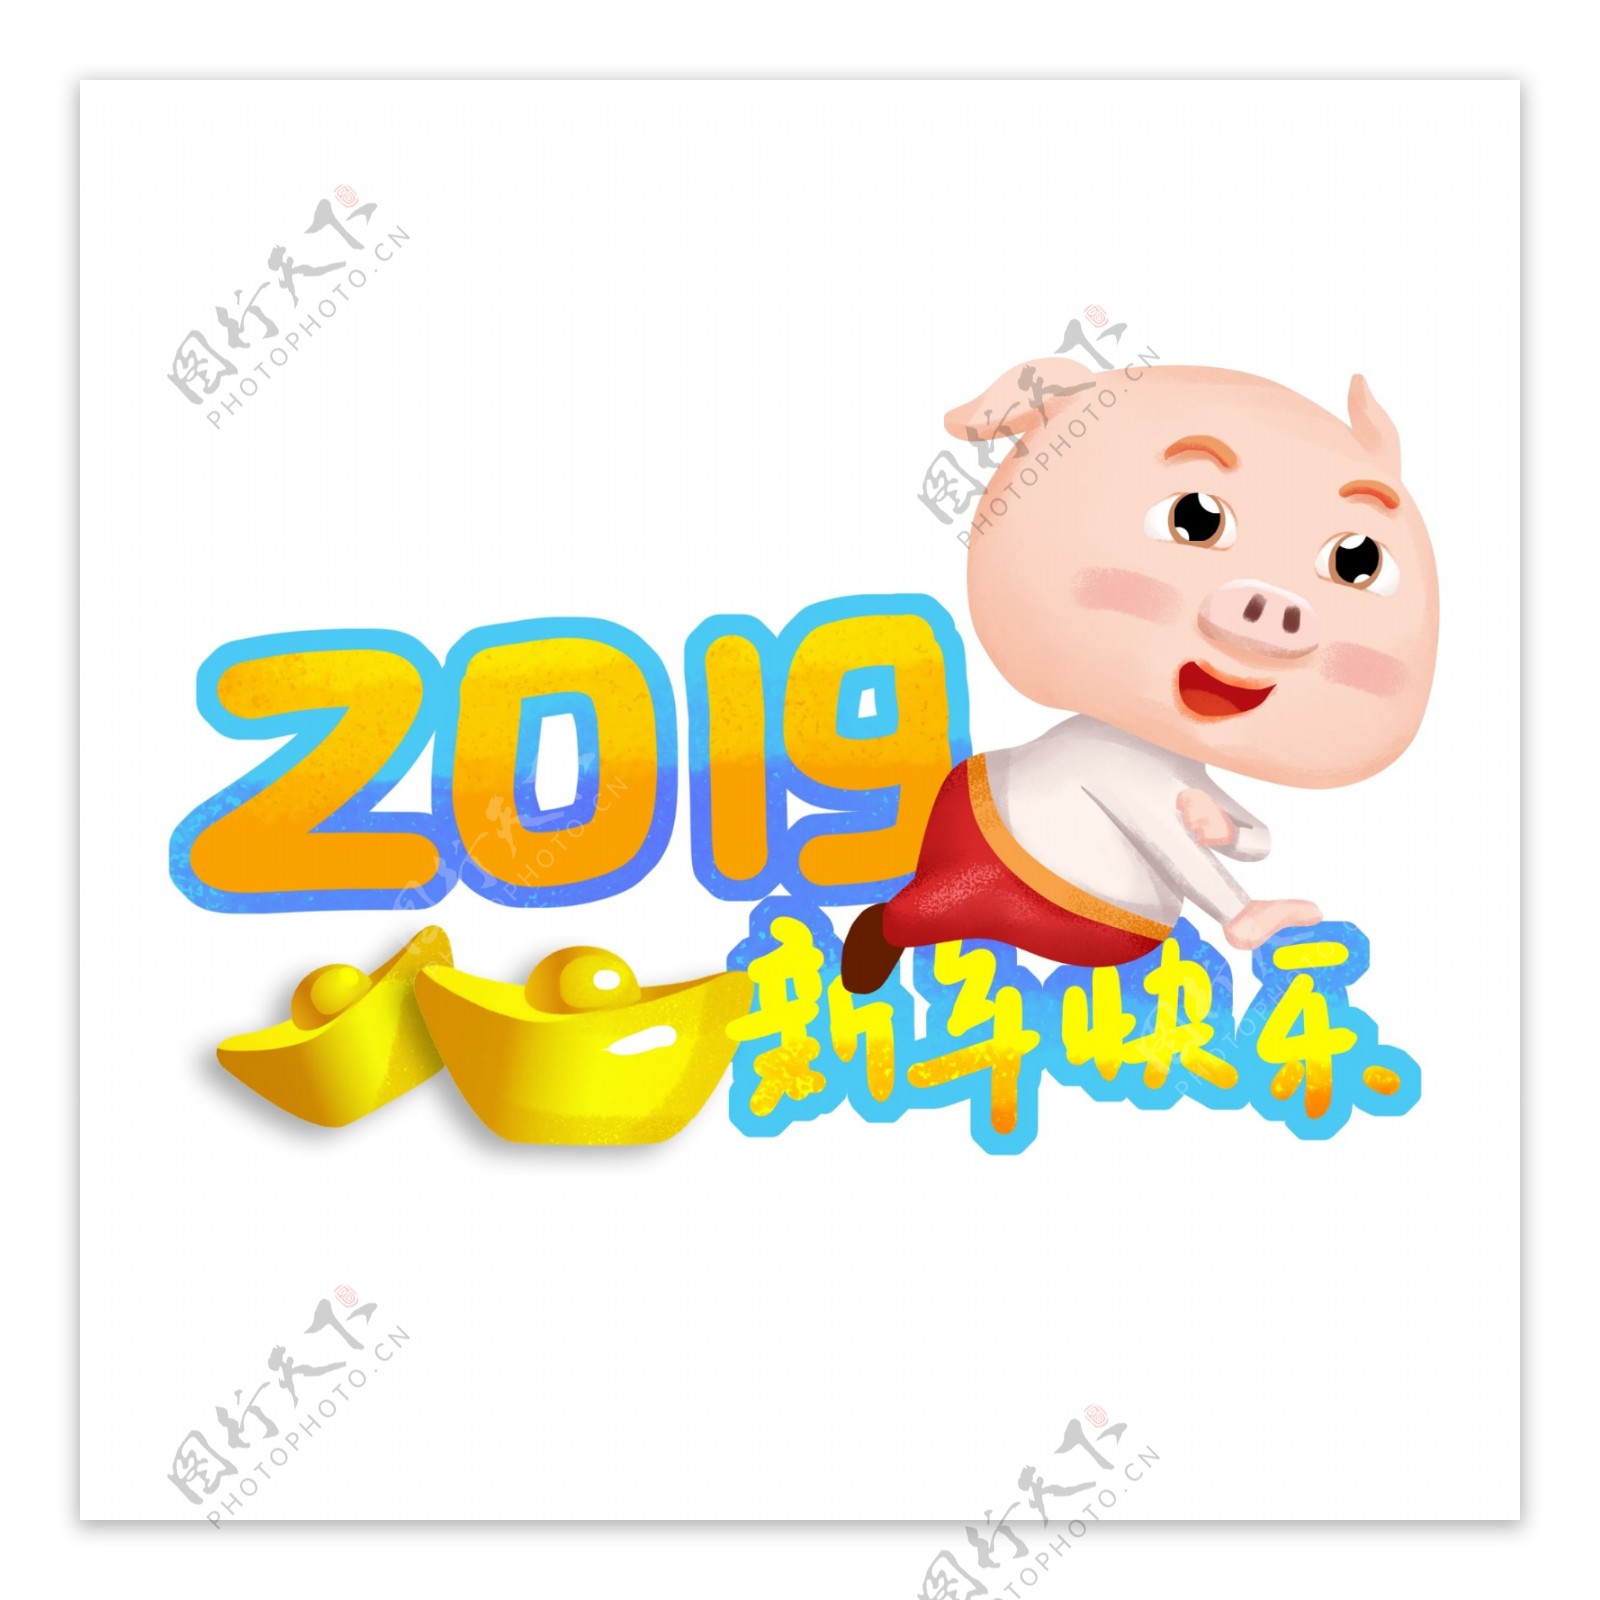 2019猪年新年快乐平安幸福